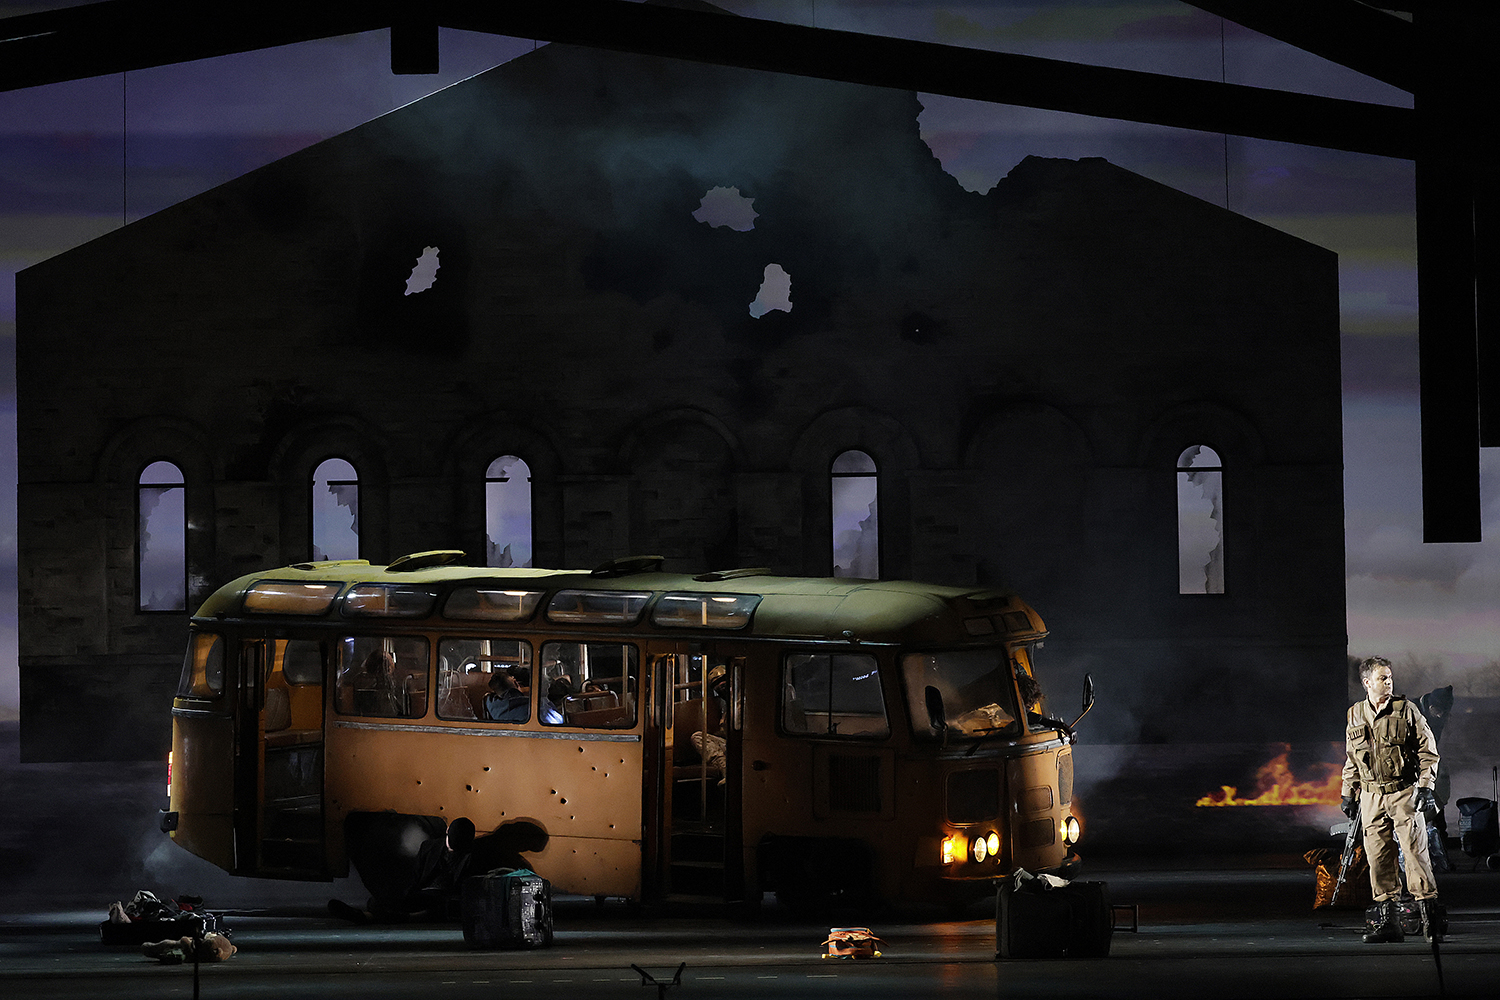 Автобус для театра